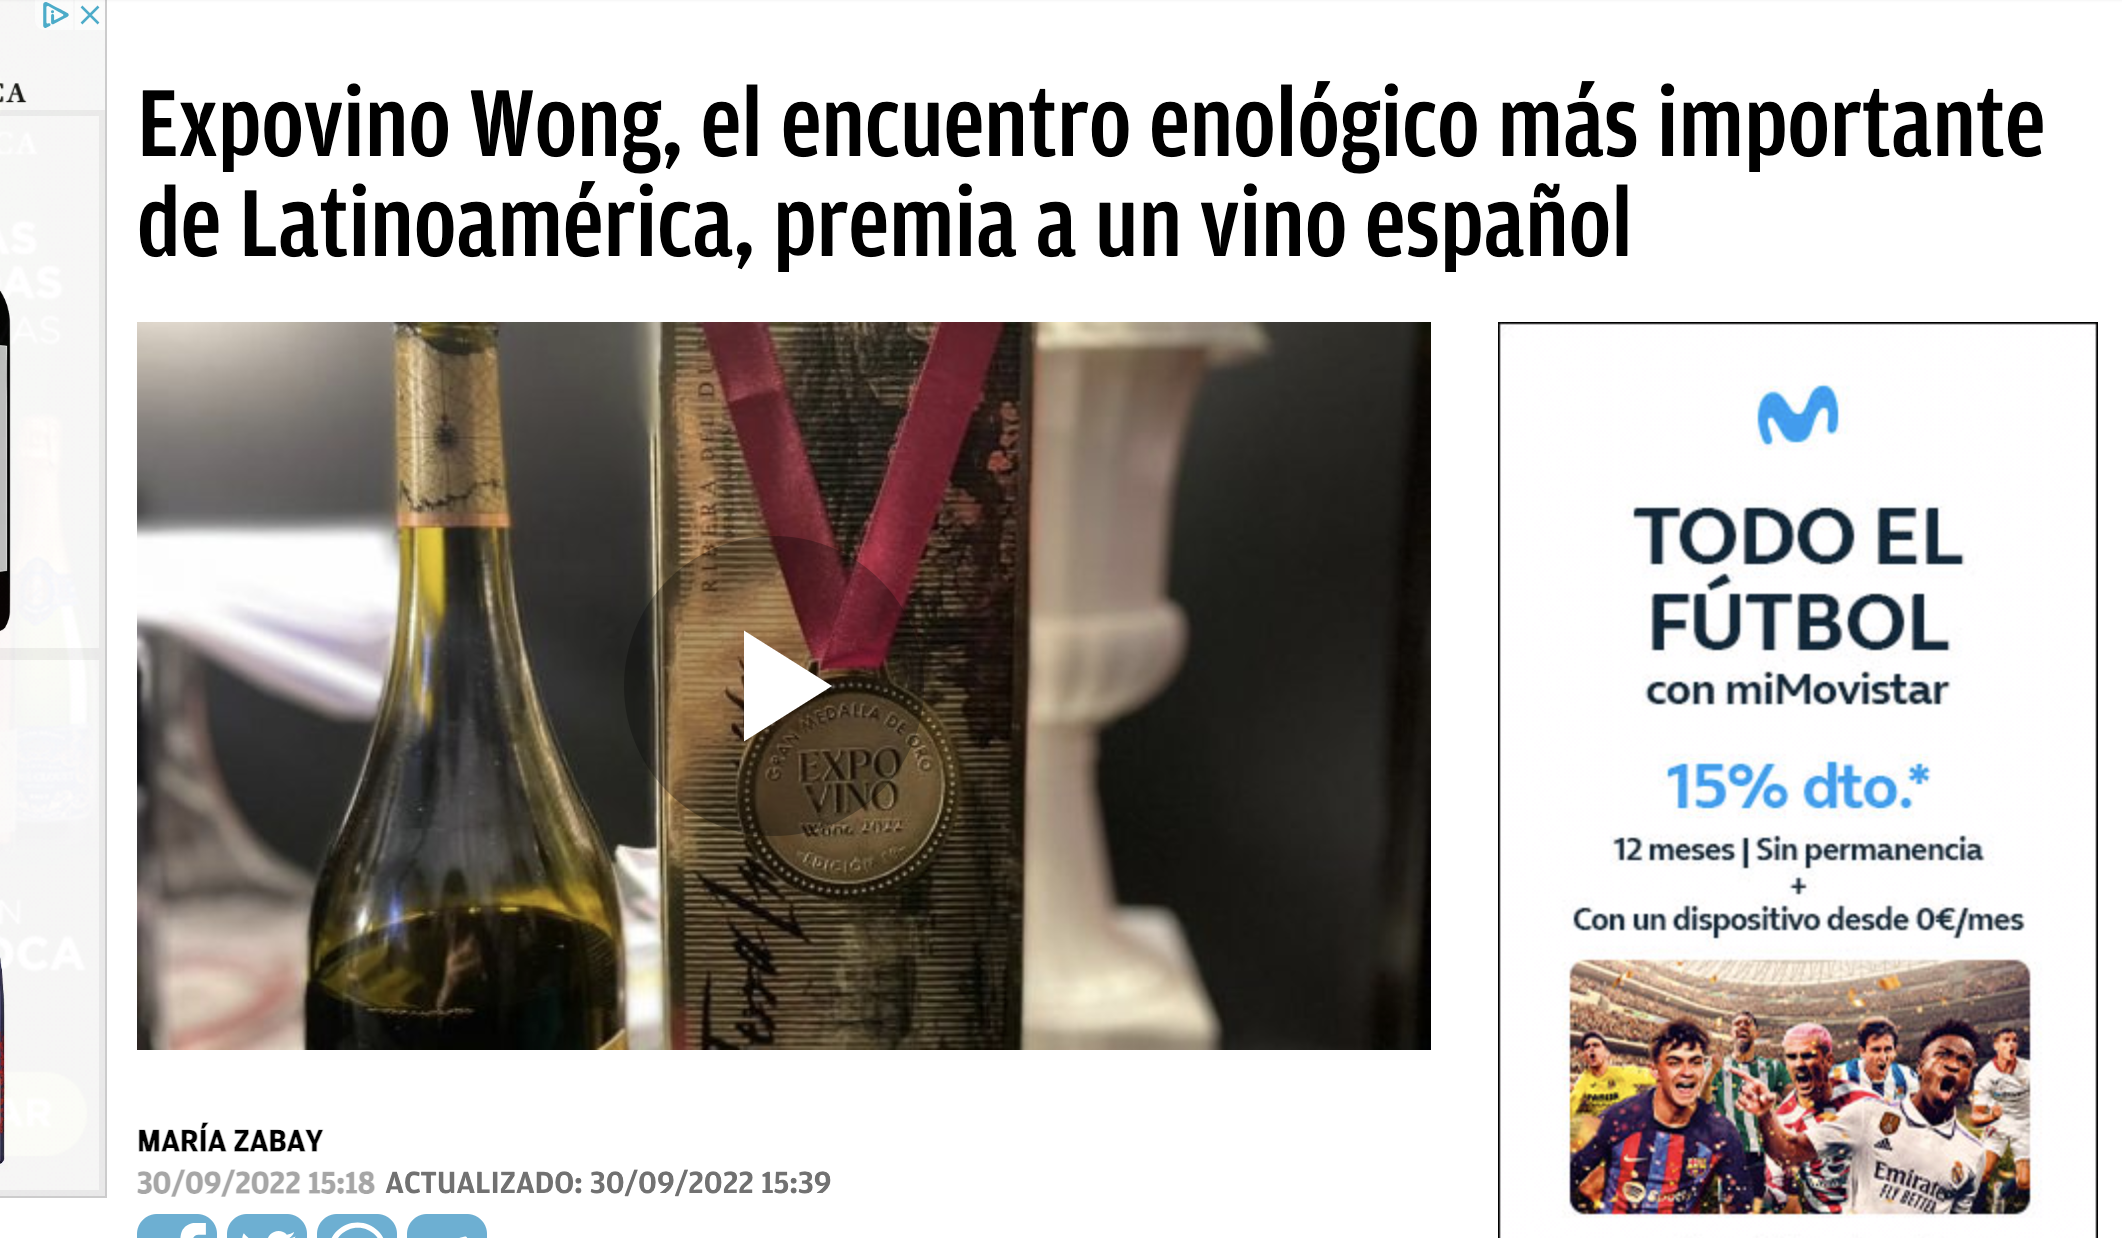 Terra Incógnita, el vino más premiado en Expovino Wong, el encuentro enológico más importante de Latinoamérica